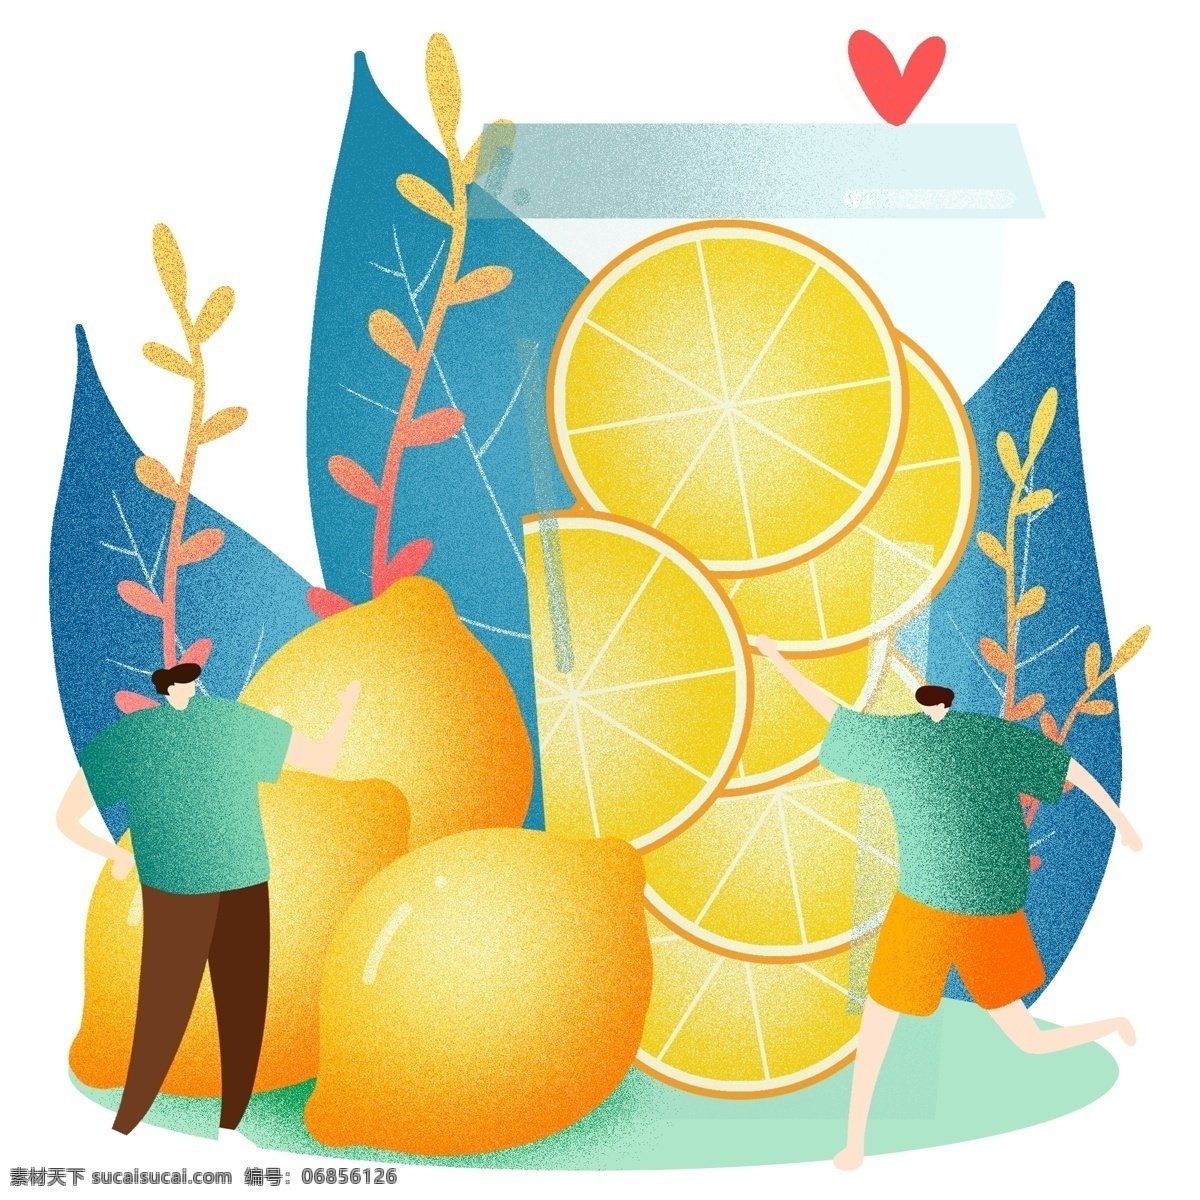 夏季柠檬果汁 水果 果汁 维生素 甜点 夏季 夏天